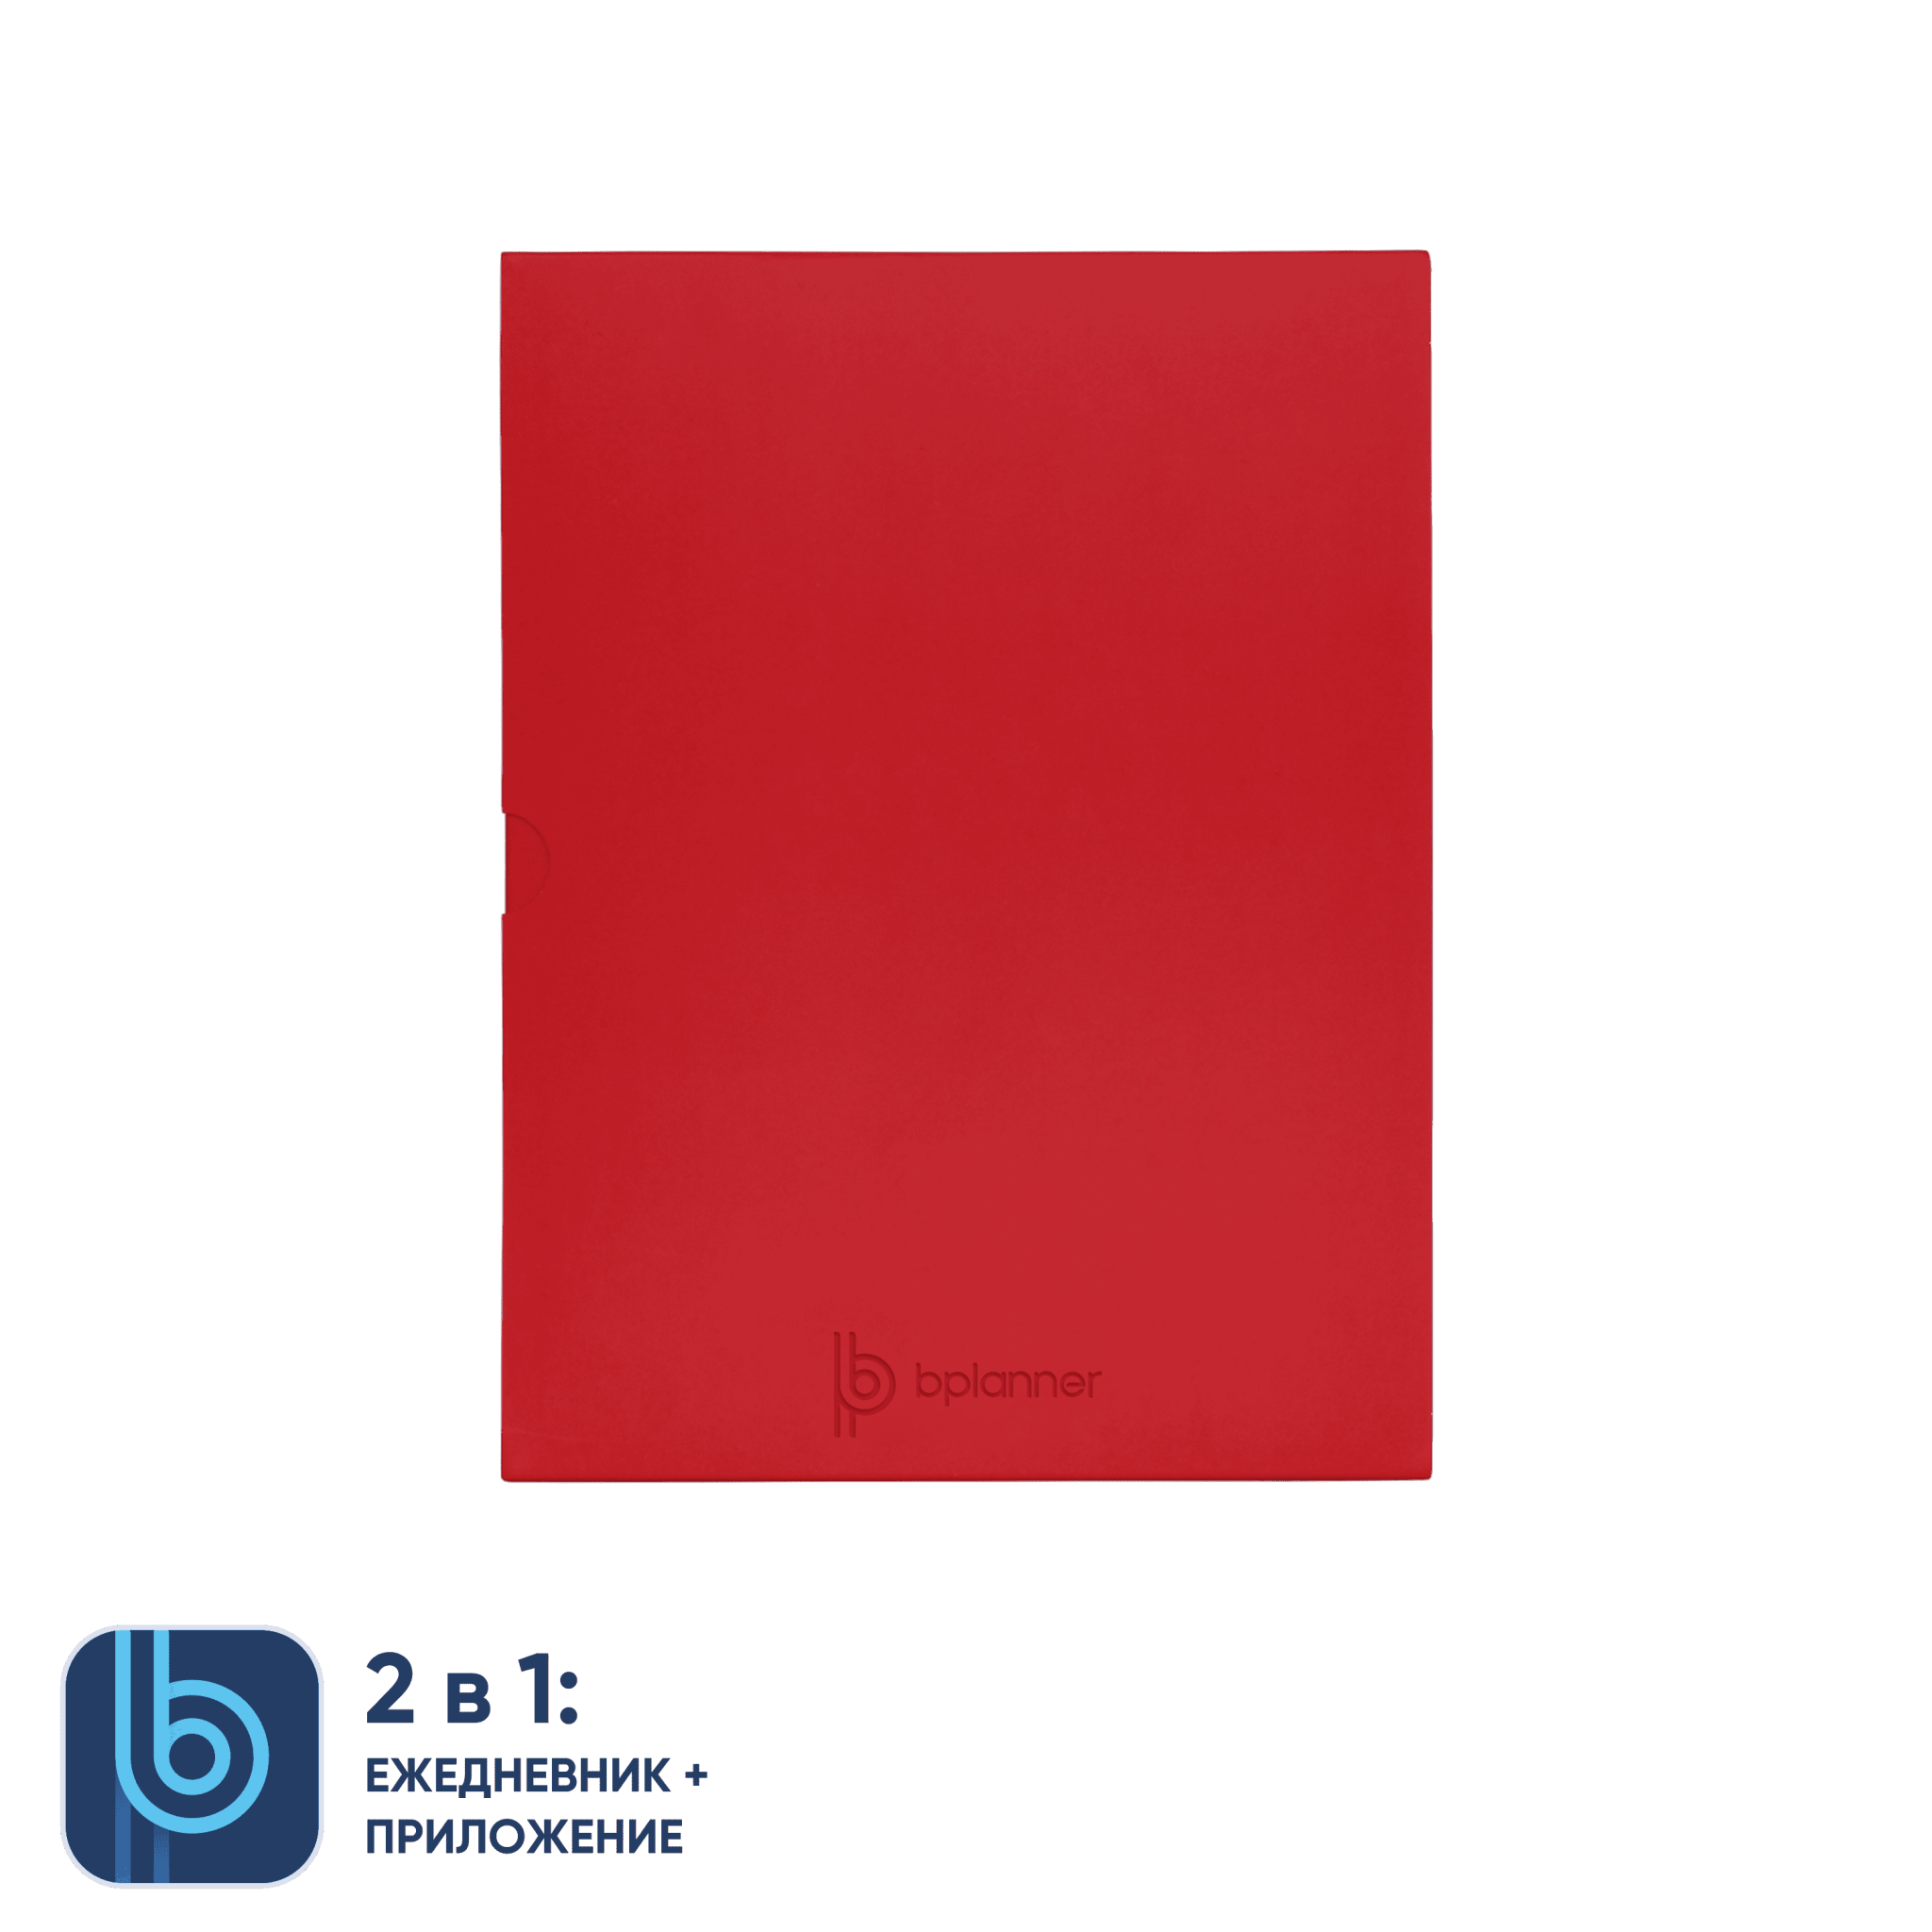 Коробка под ежедневник Bplanner (красный), красный, картон